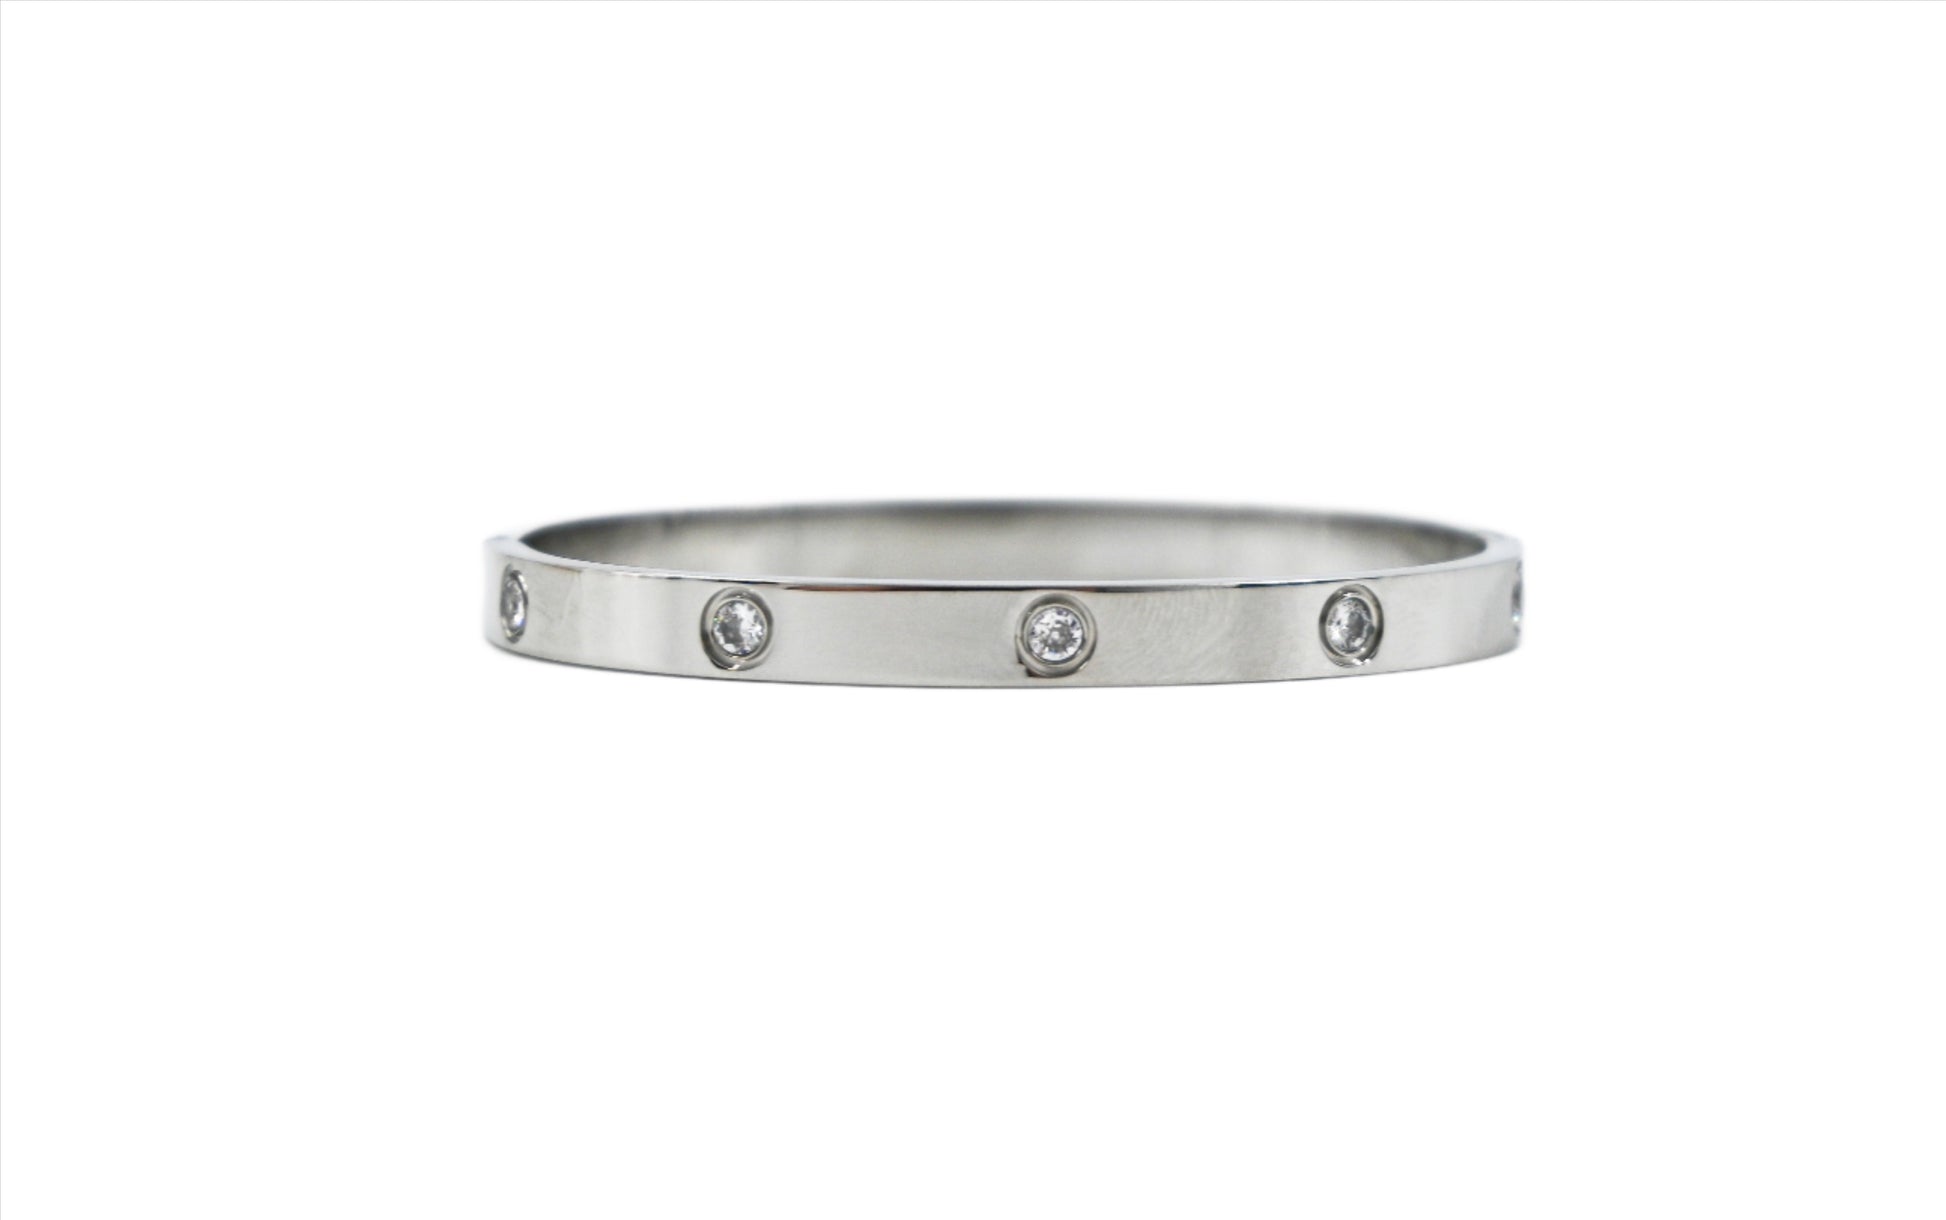 Cartier style bracelet in silver